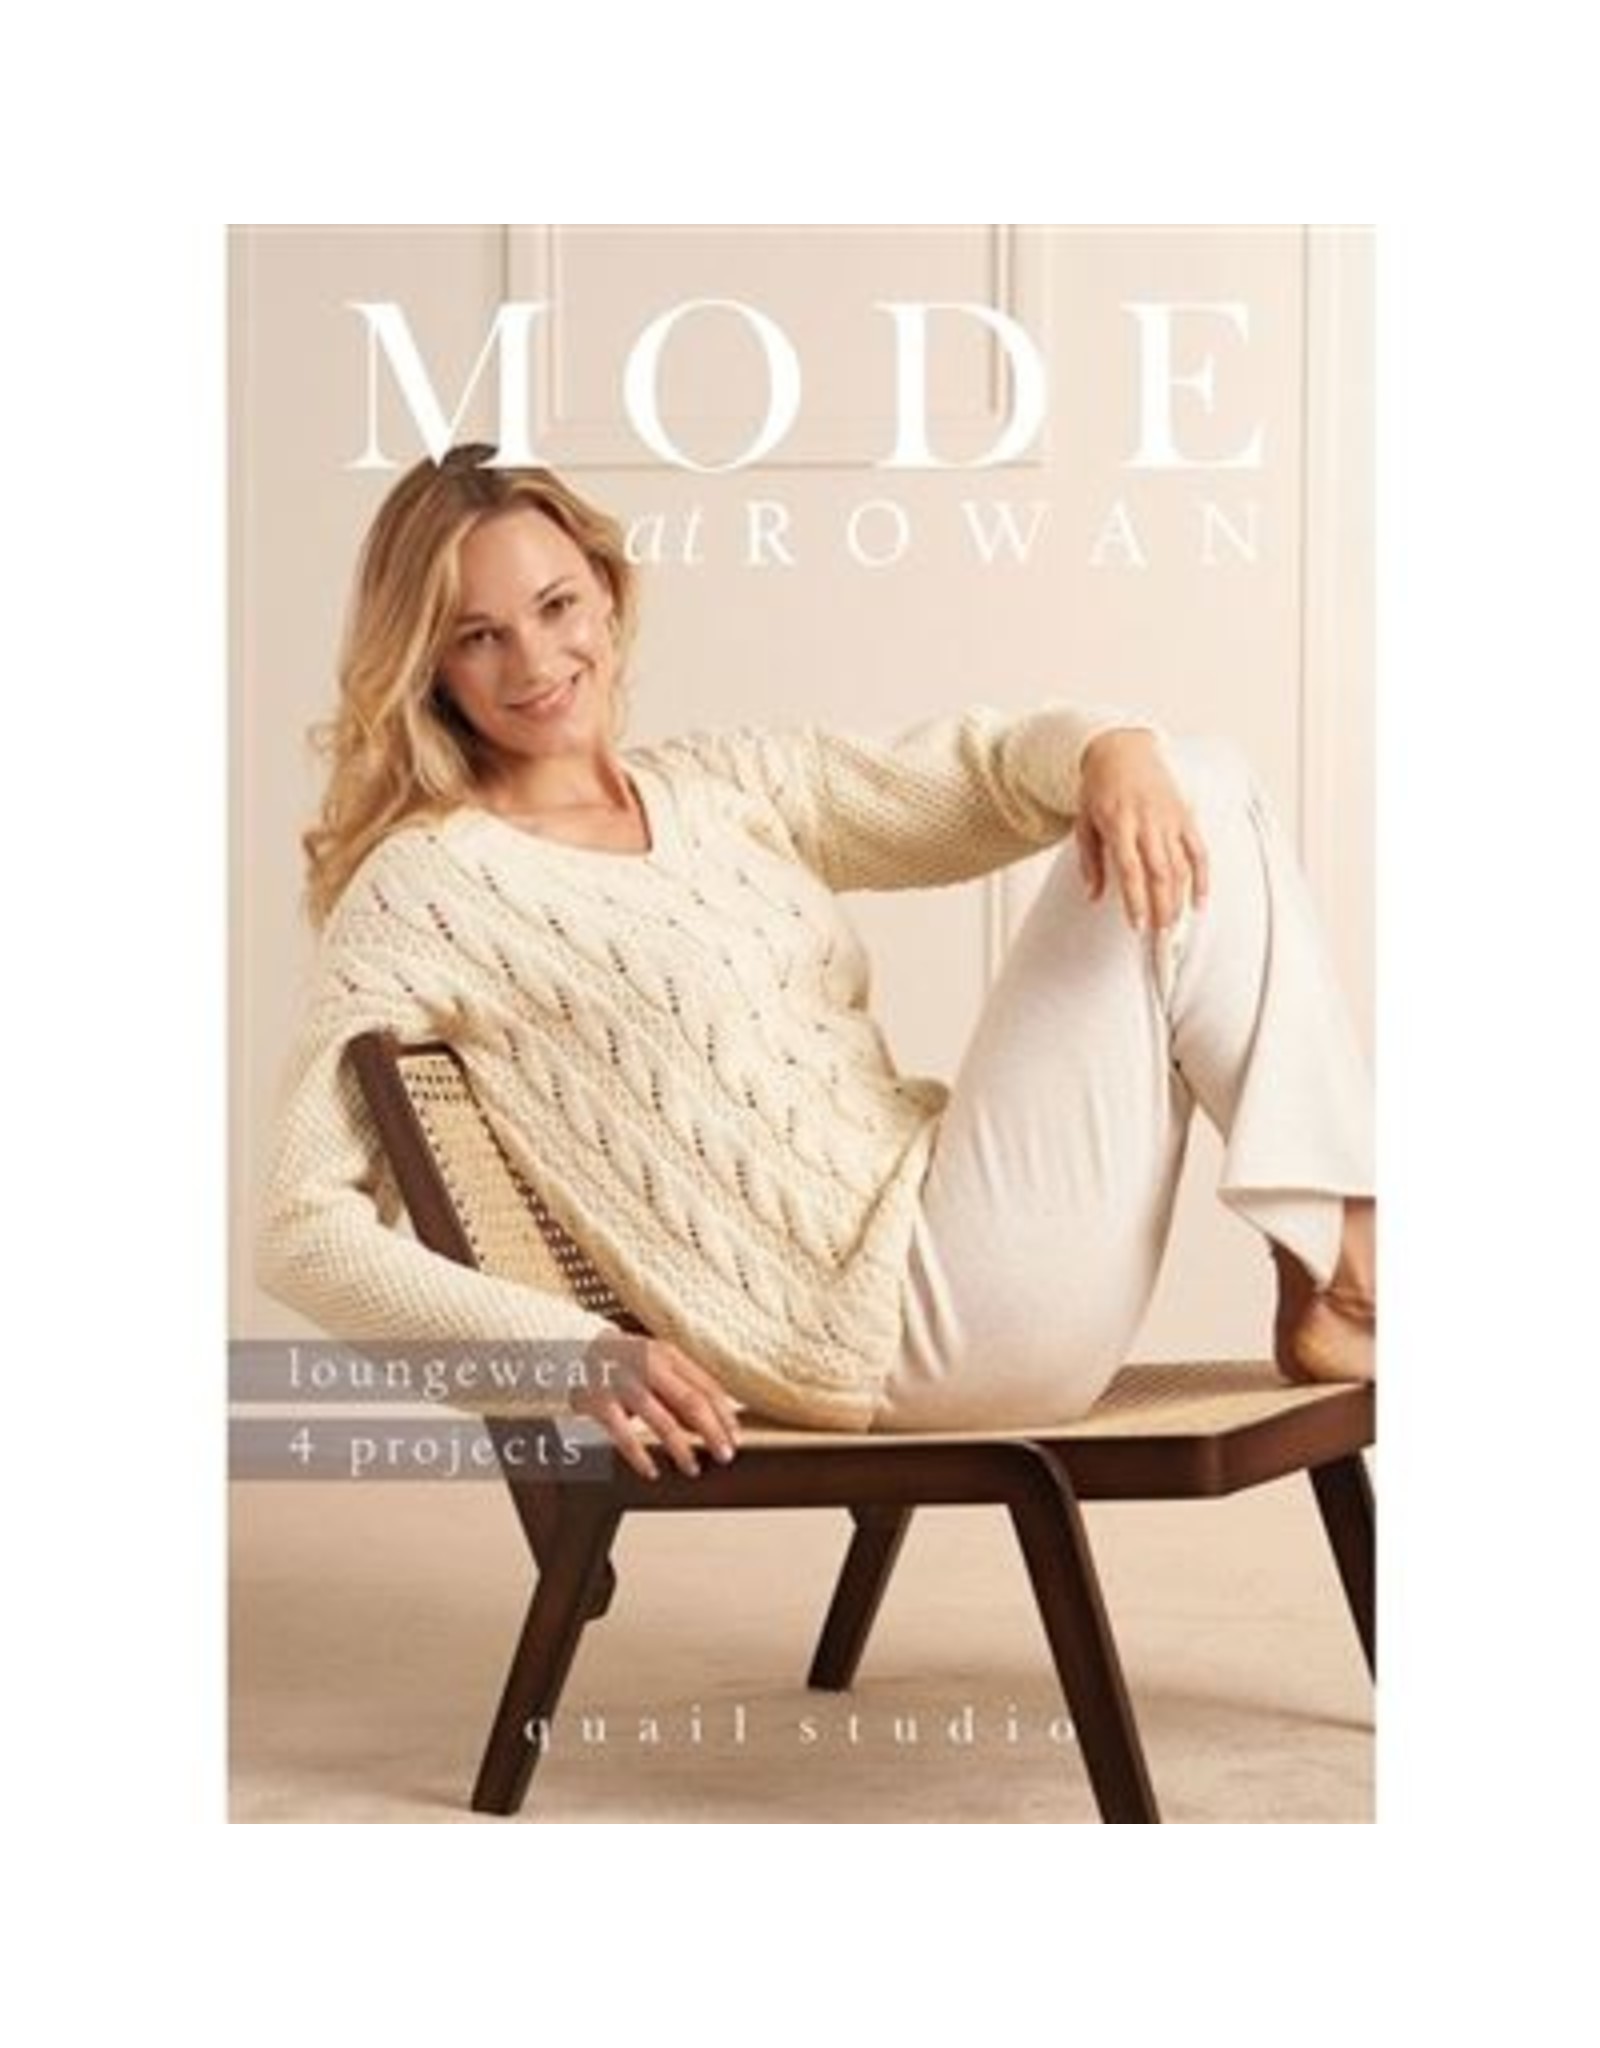 Rowan Rowan: Mode at Rowan: loungewear 4 projects